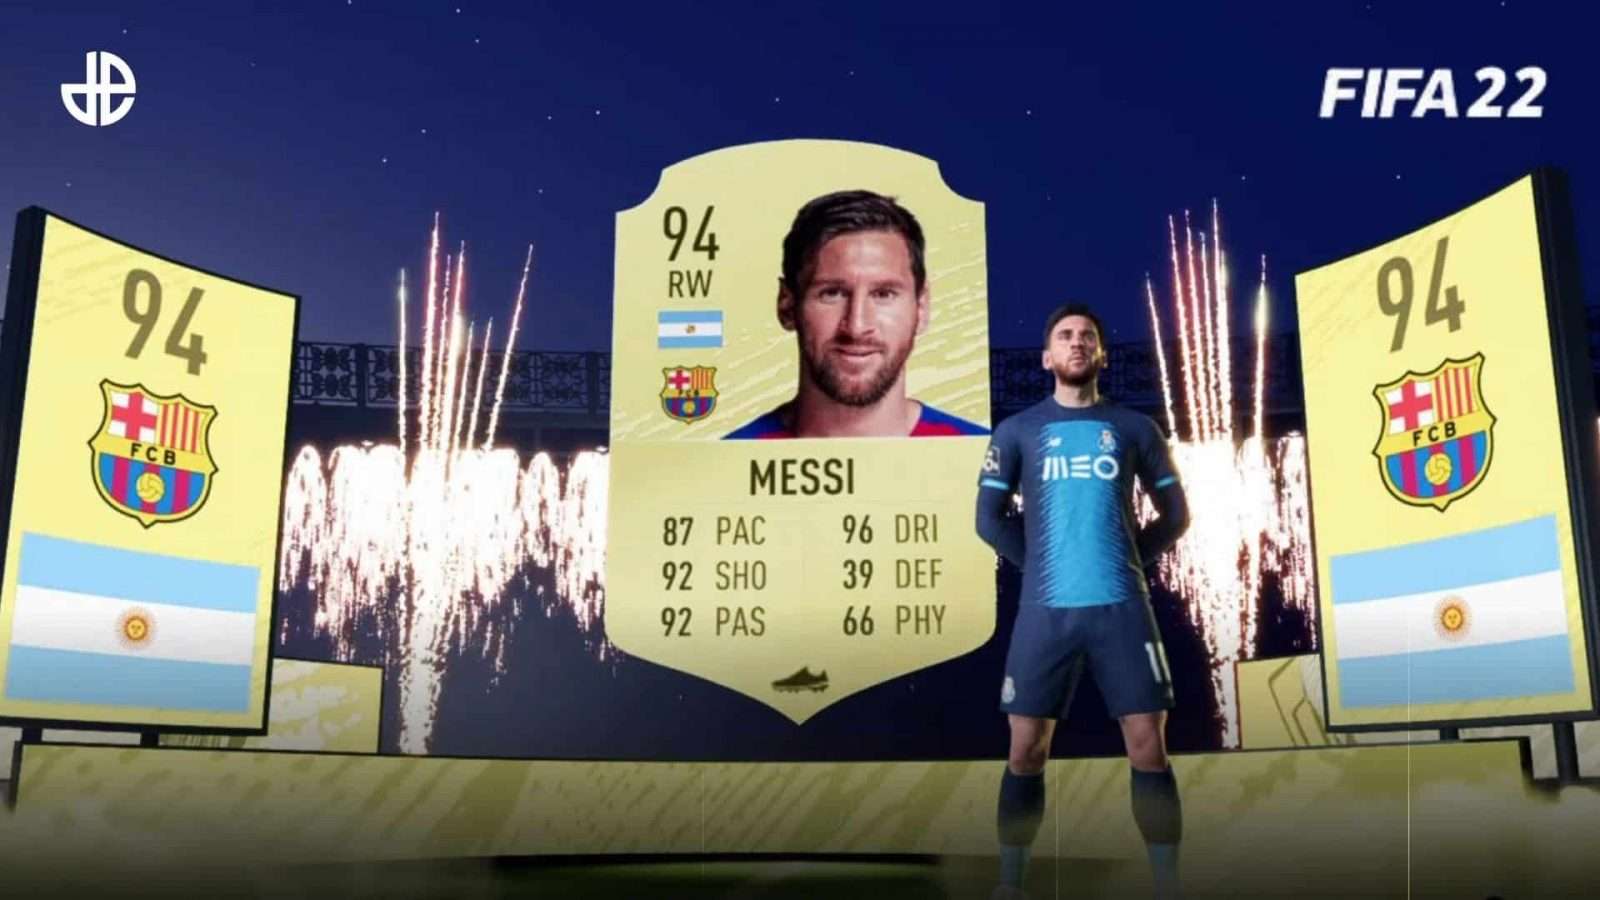 FIFA 22 Lionel Messi card